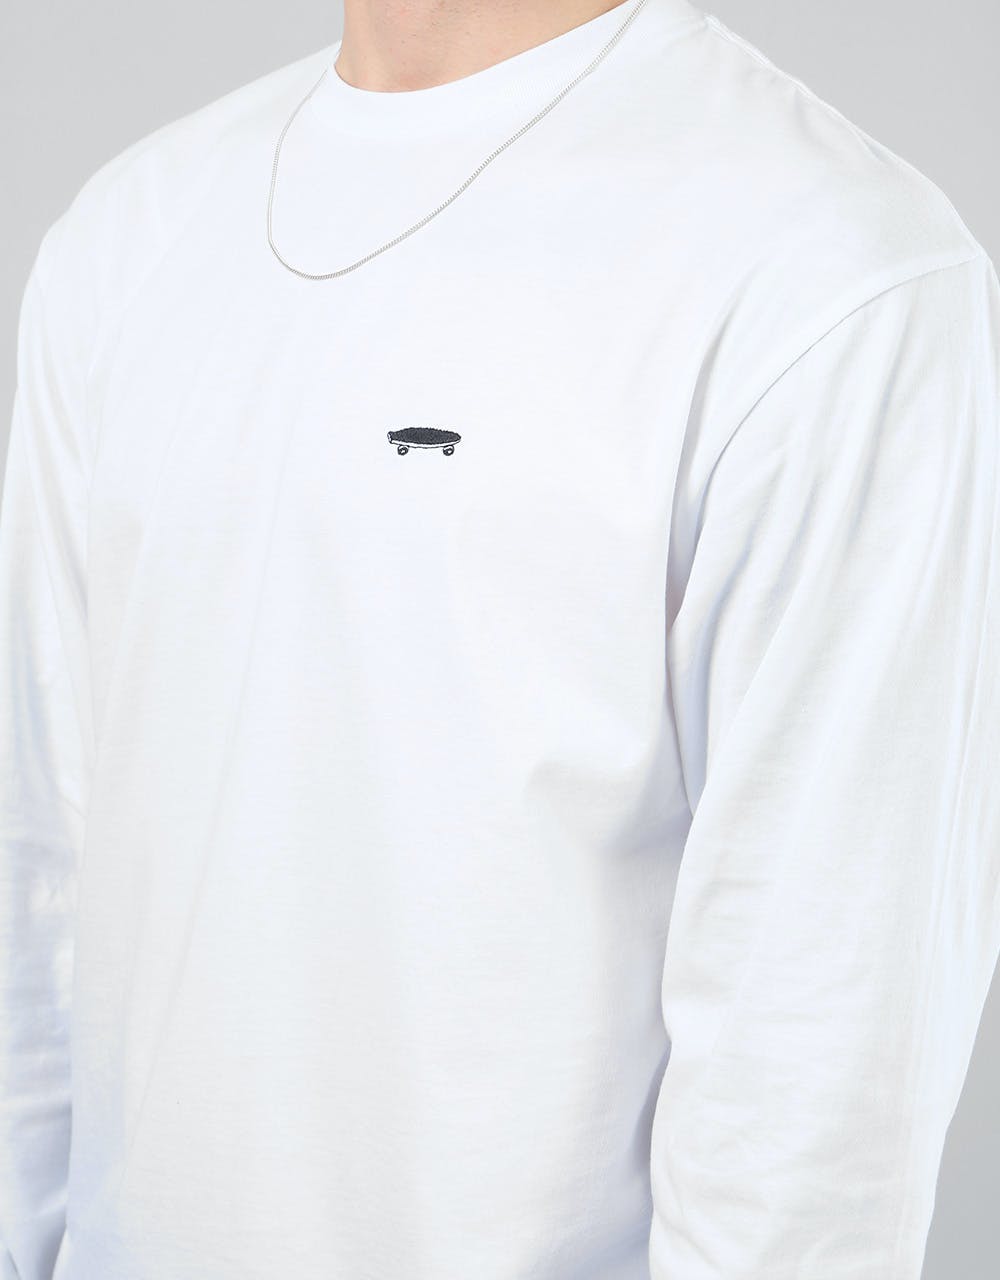 Vans Skate L/S T-Shirt - White